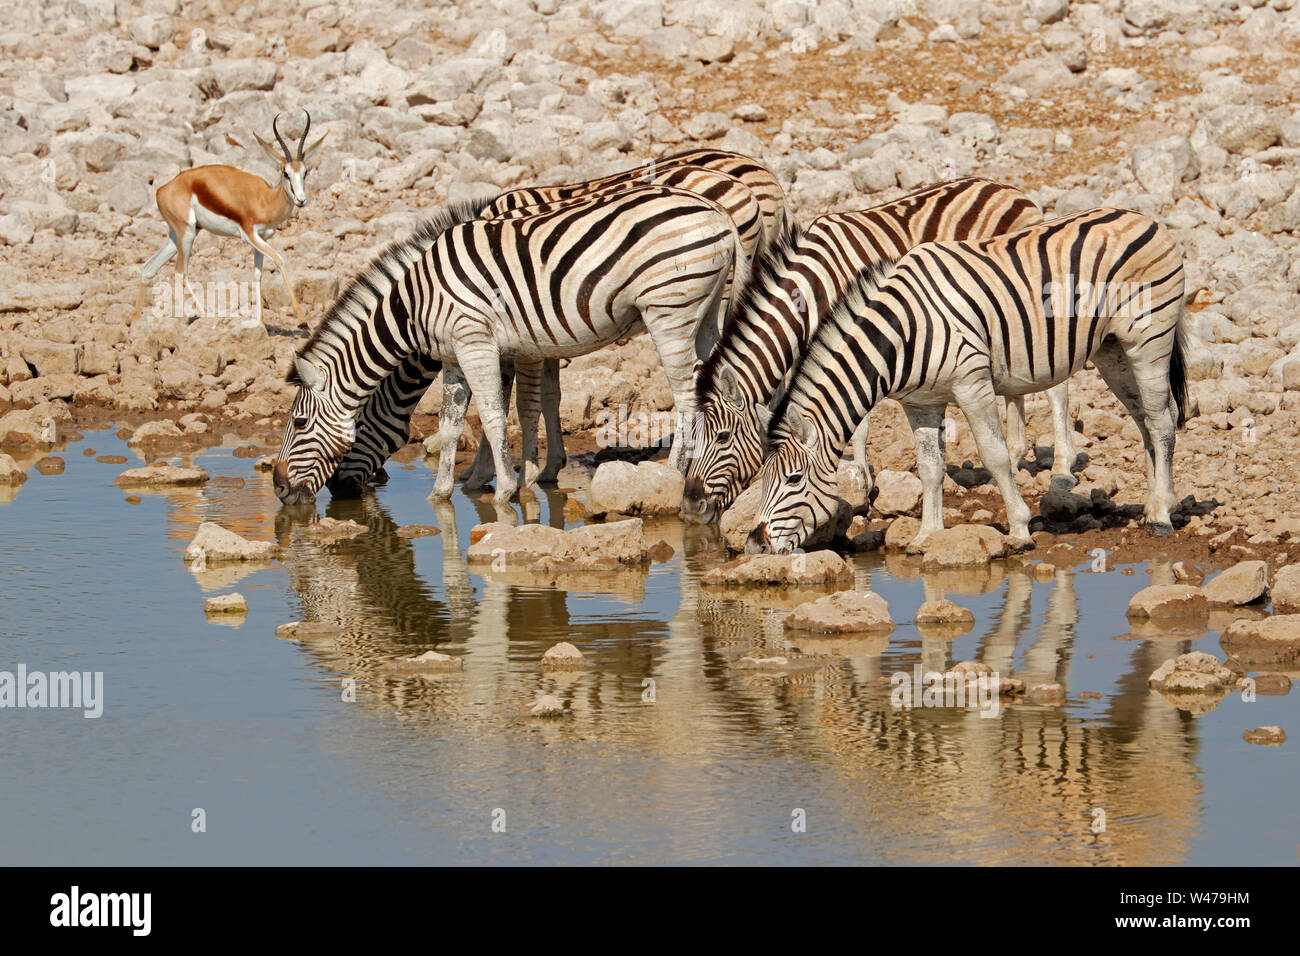 Le pianure zebre (Equus burchelli) acqua potabile, il Parco Nazionale di Etosha, Namibia Foto Stock